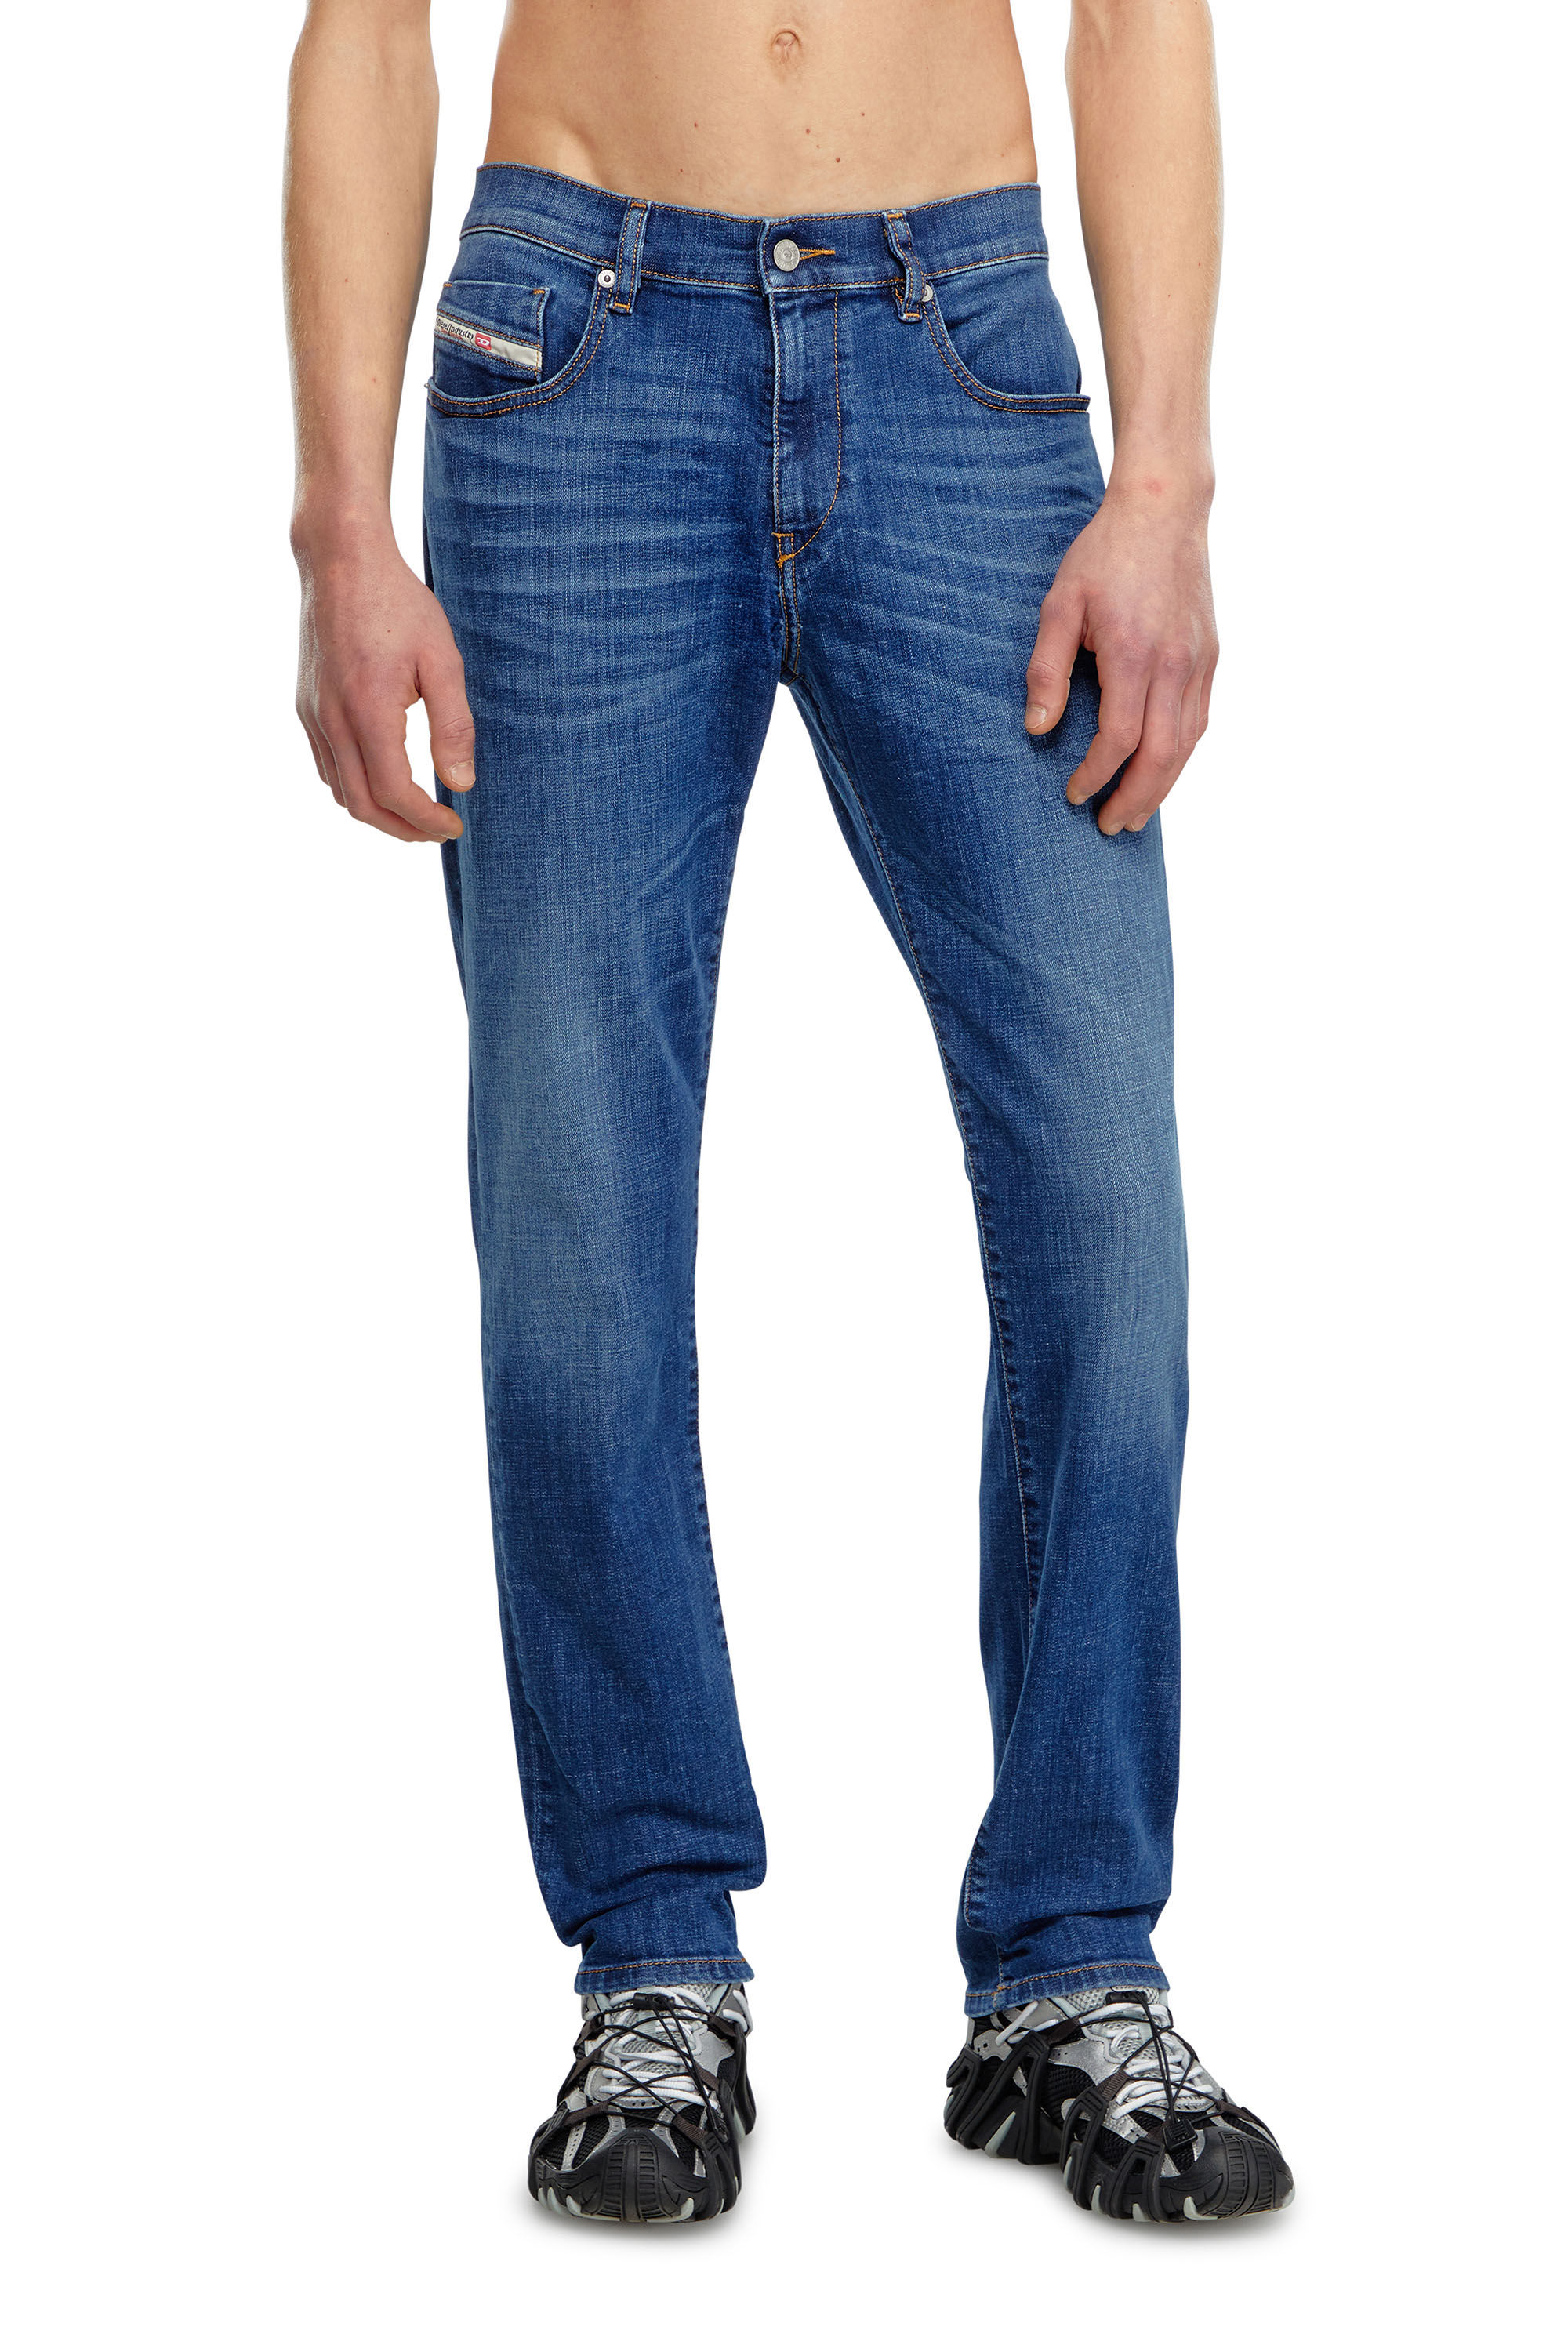 Diesel - Slim Jeans 2019 D-Strukt 09K04, Hombre Slim Jeans - 2019 D-Strukt in Azul marino - Image 2